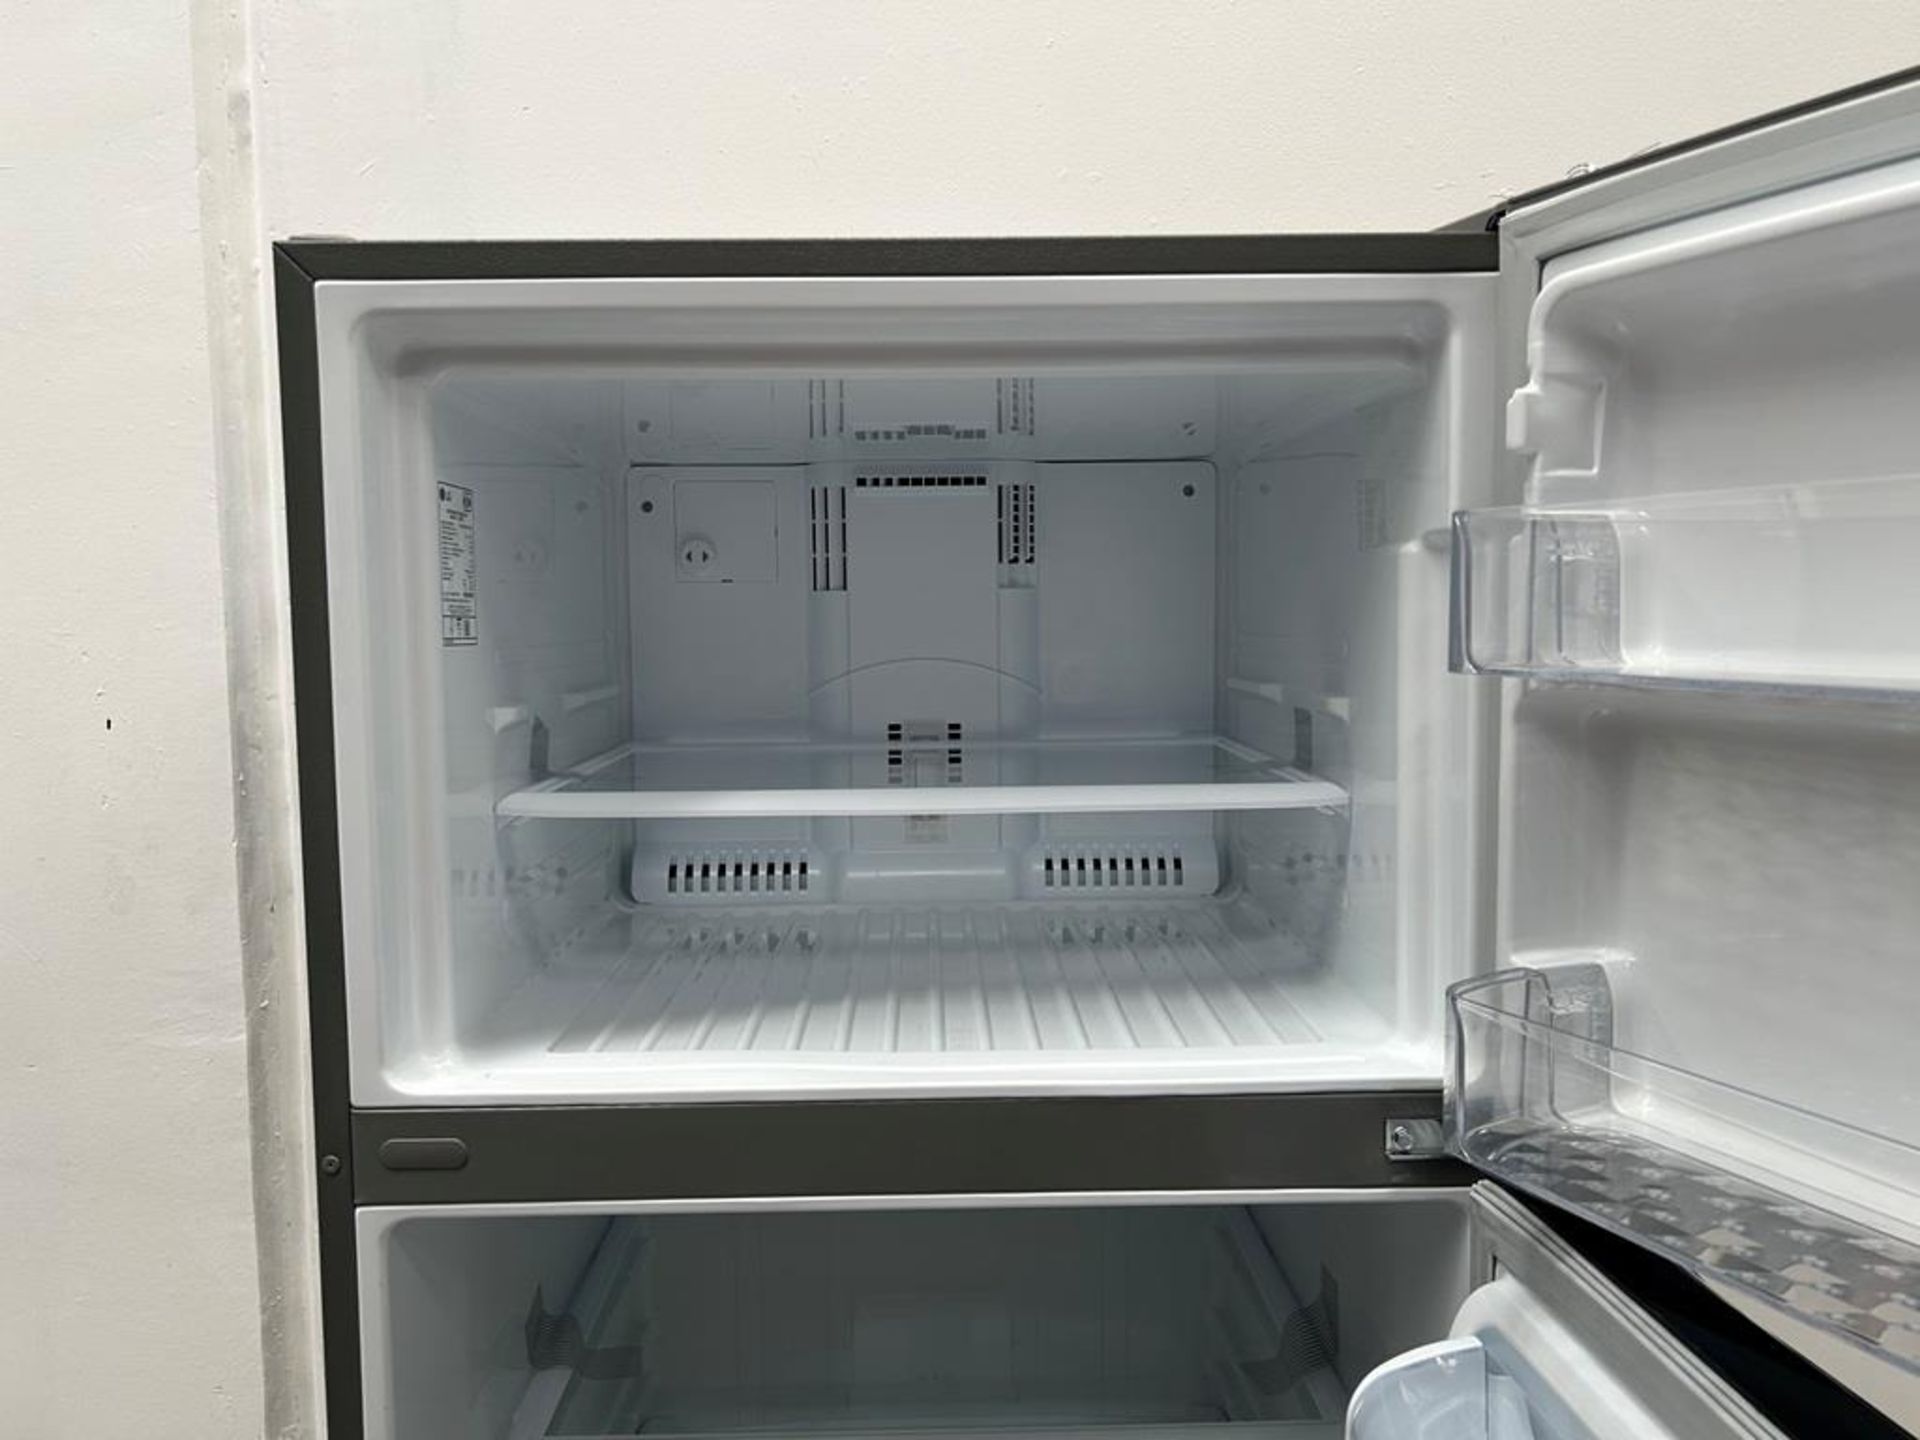 (NUEVO) Refrigerador Marca LG, Modelo LT57BPSX, Serie P2D419, Color GRIS - Image 5 of 11